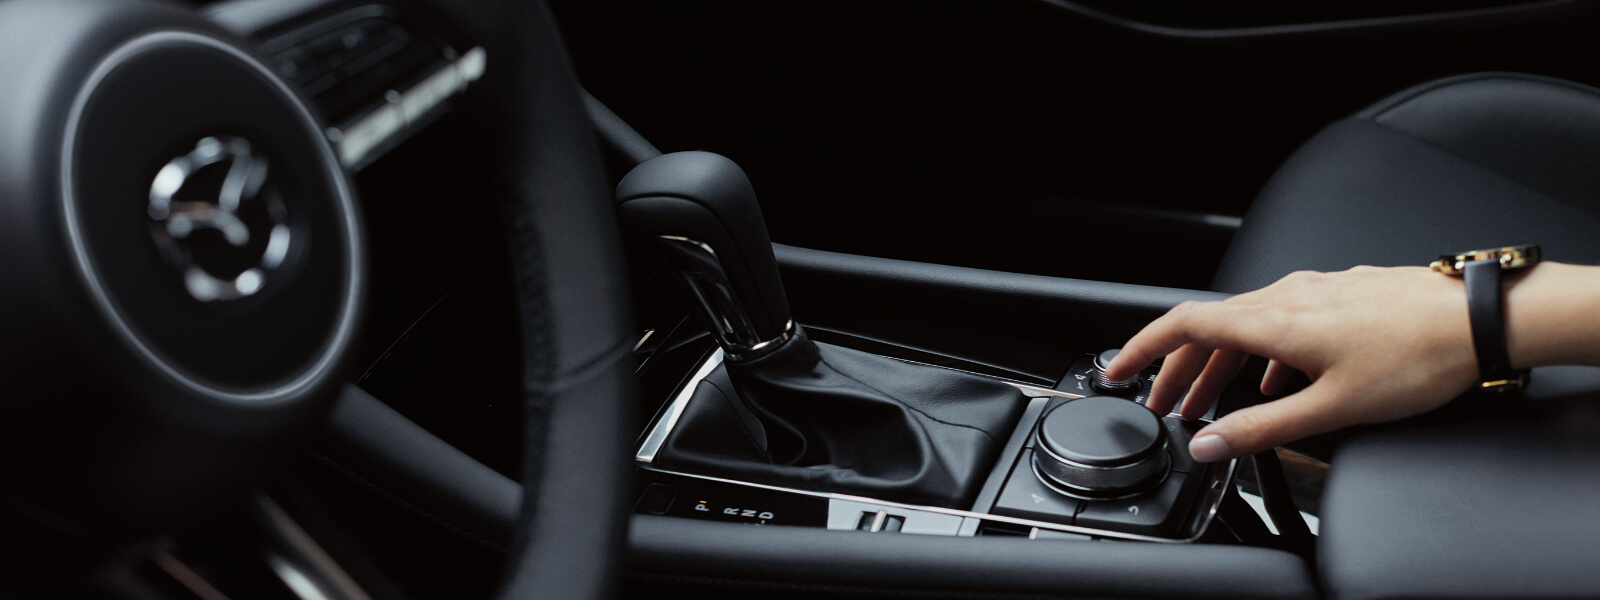 Intérieur d’une Mazda montrant la main droite d’une femme actionnant une commande de la console 